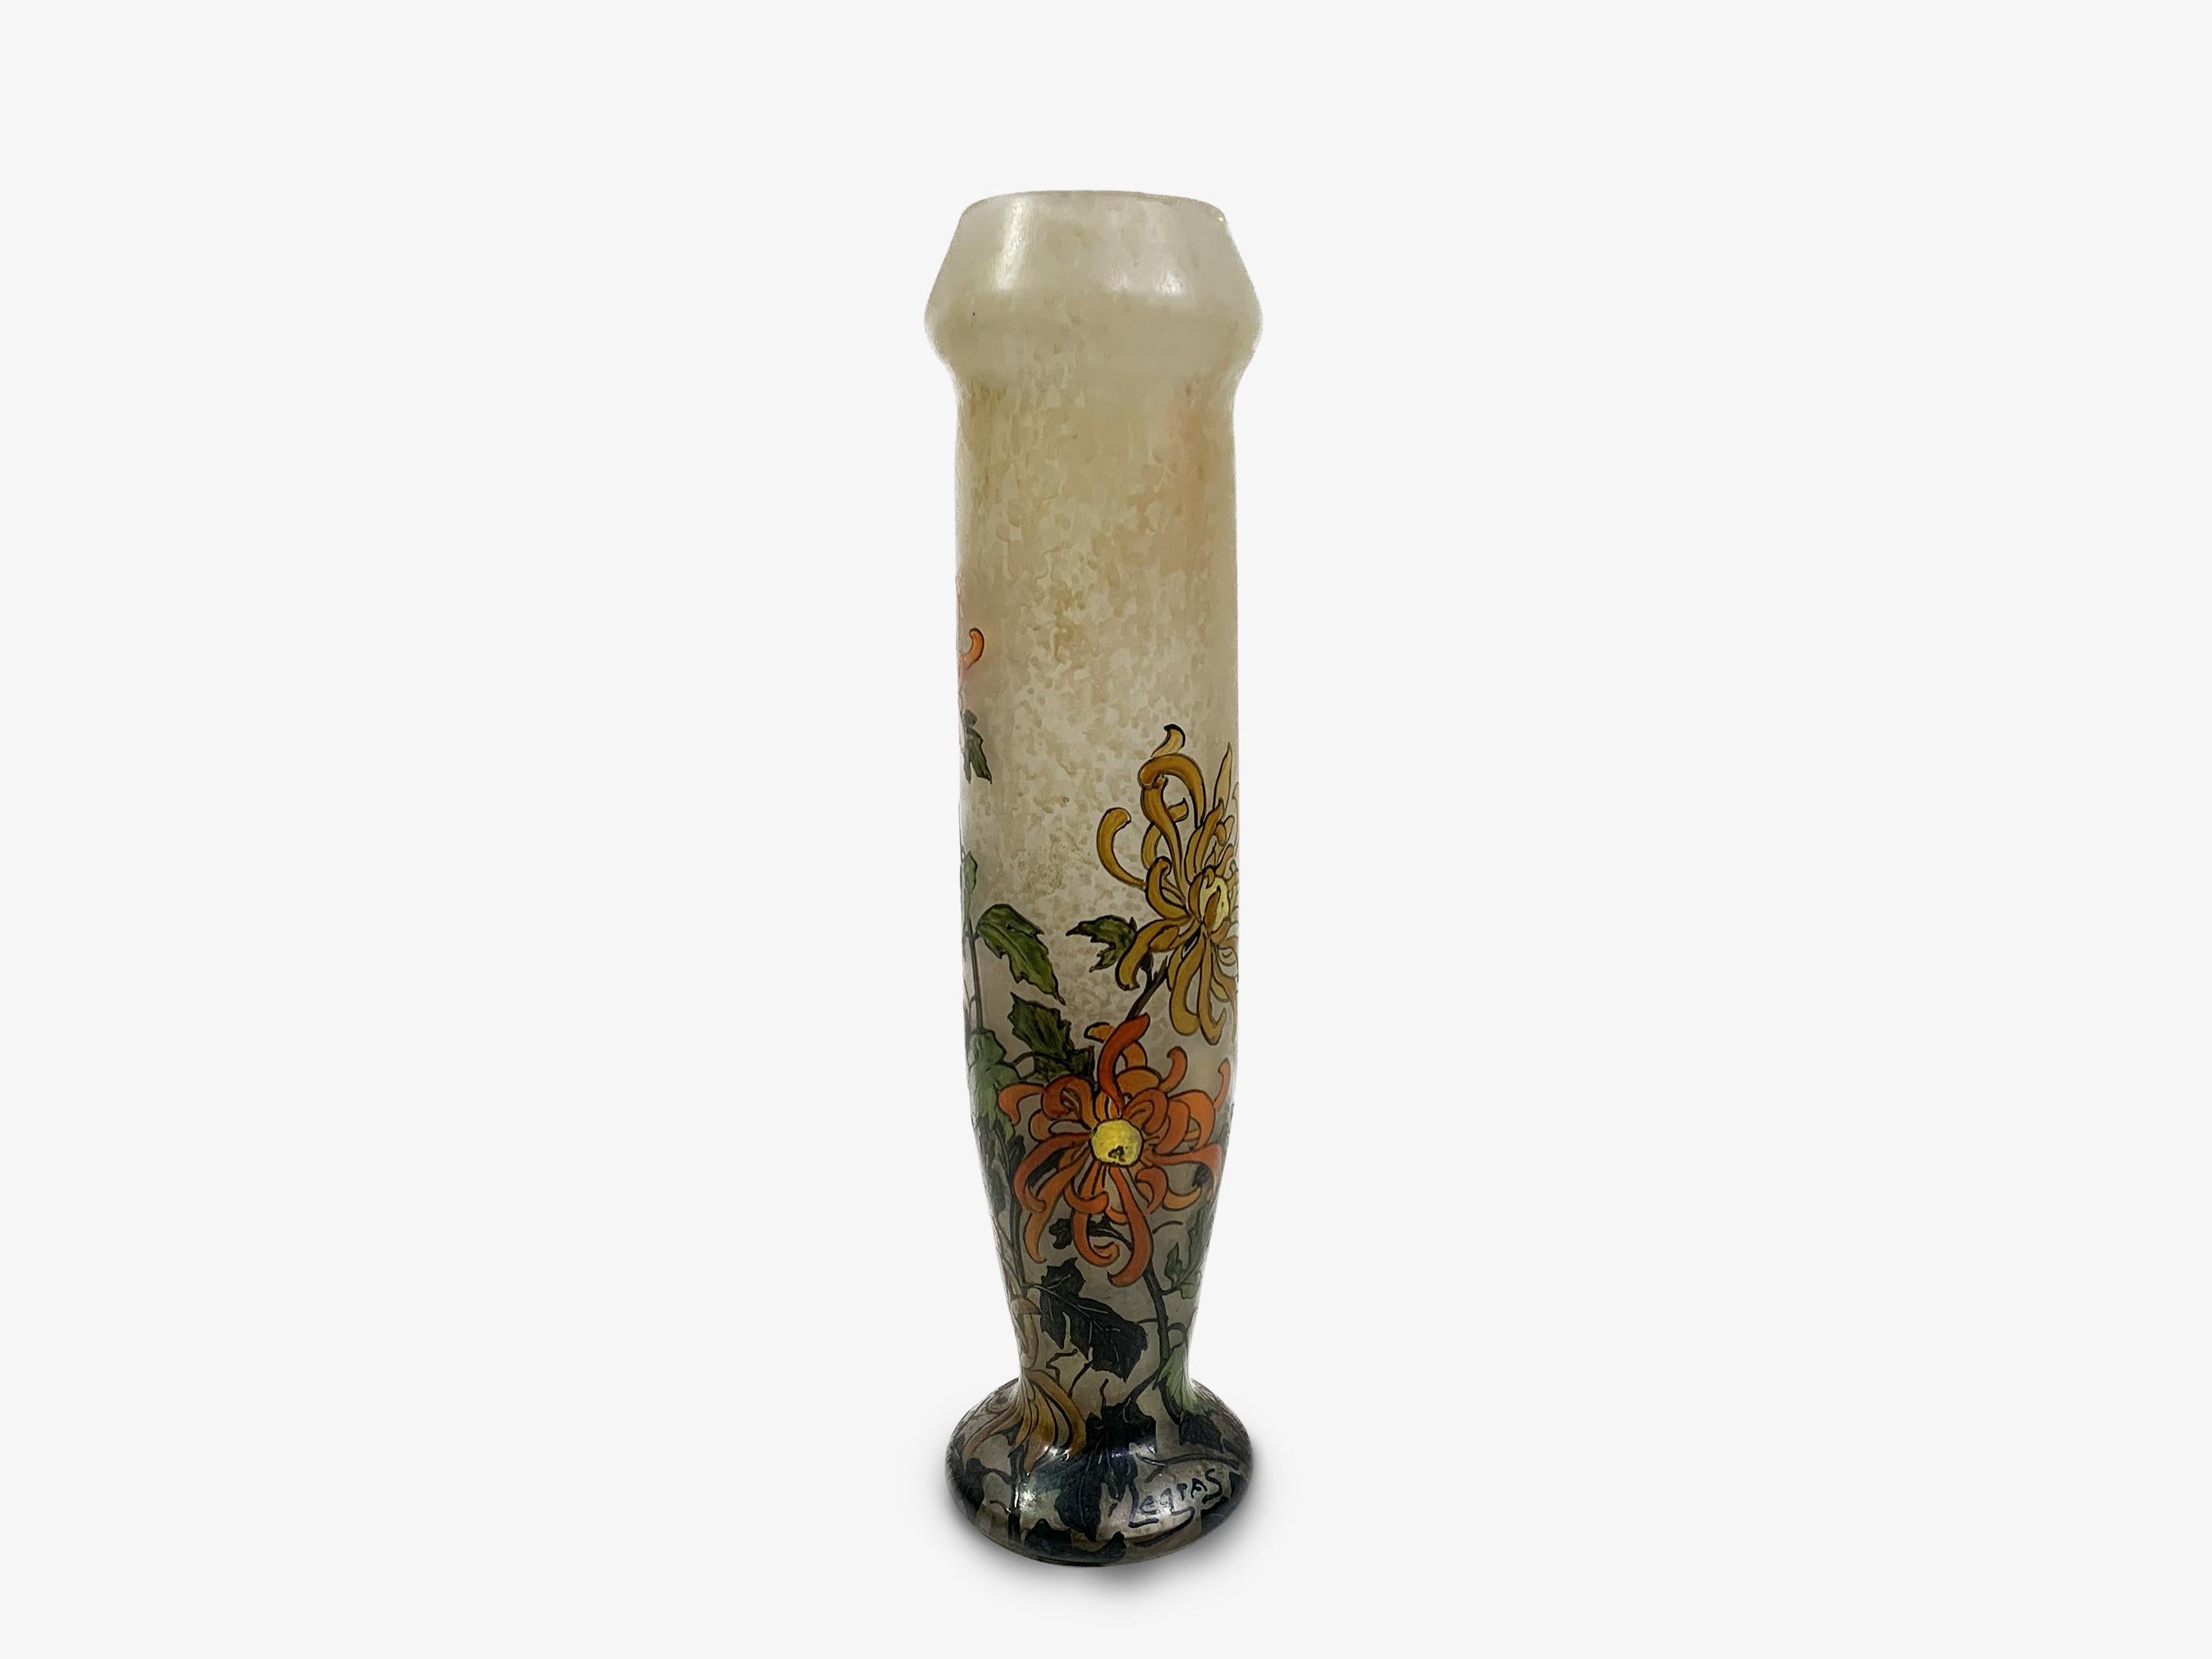 Vase à fleurs émaillé Art nouveau signé par François Théodore Legras, l'un des maîtres verriers de la période Art nouveau.
Le vase, peint à la main et représentant des fleurs d'aster encerclant sa surface, illustre à la fois l'art de